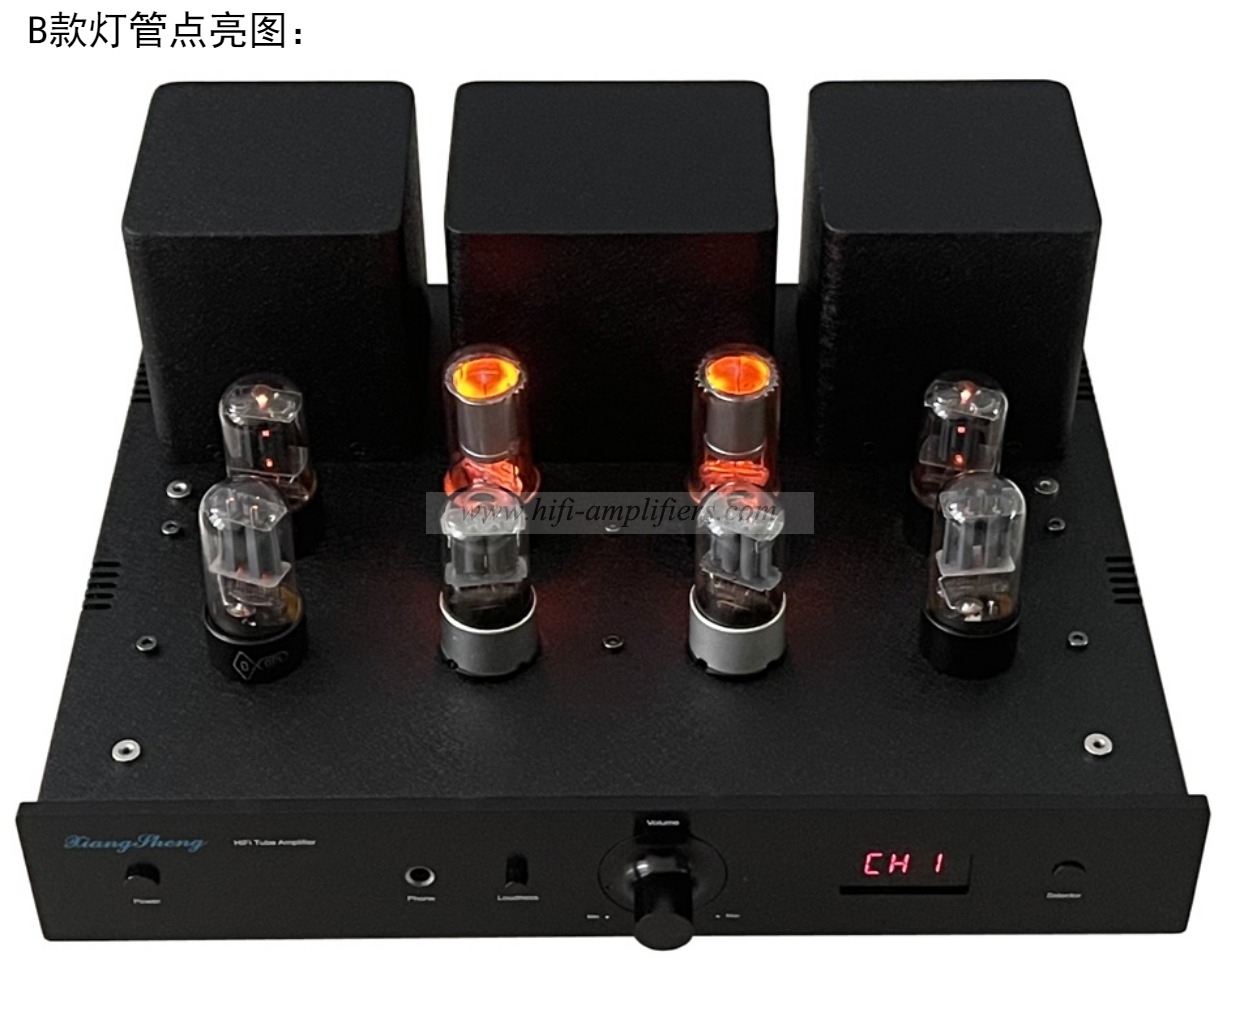 Preamplificador de auriculares XiangSheng HIFI con Bluetooth y control remoto